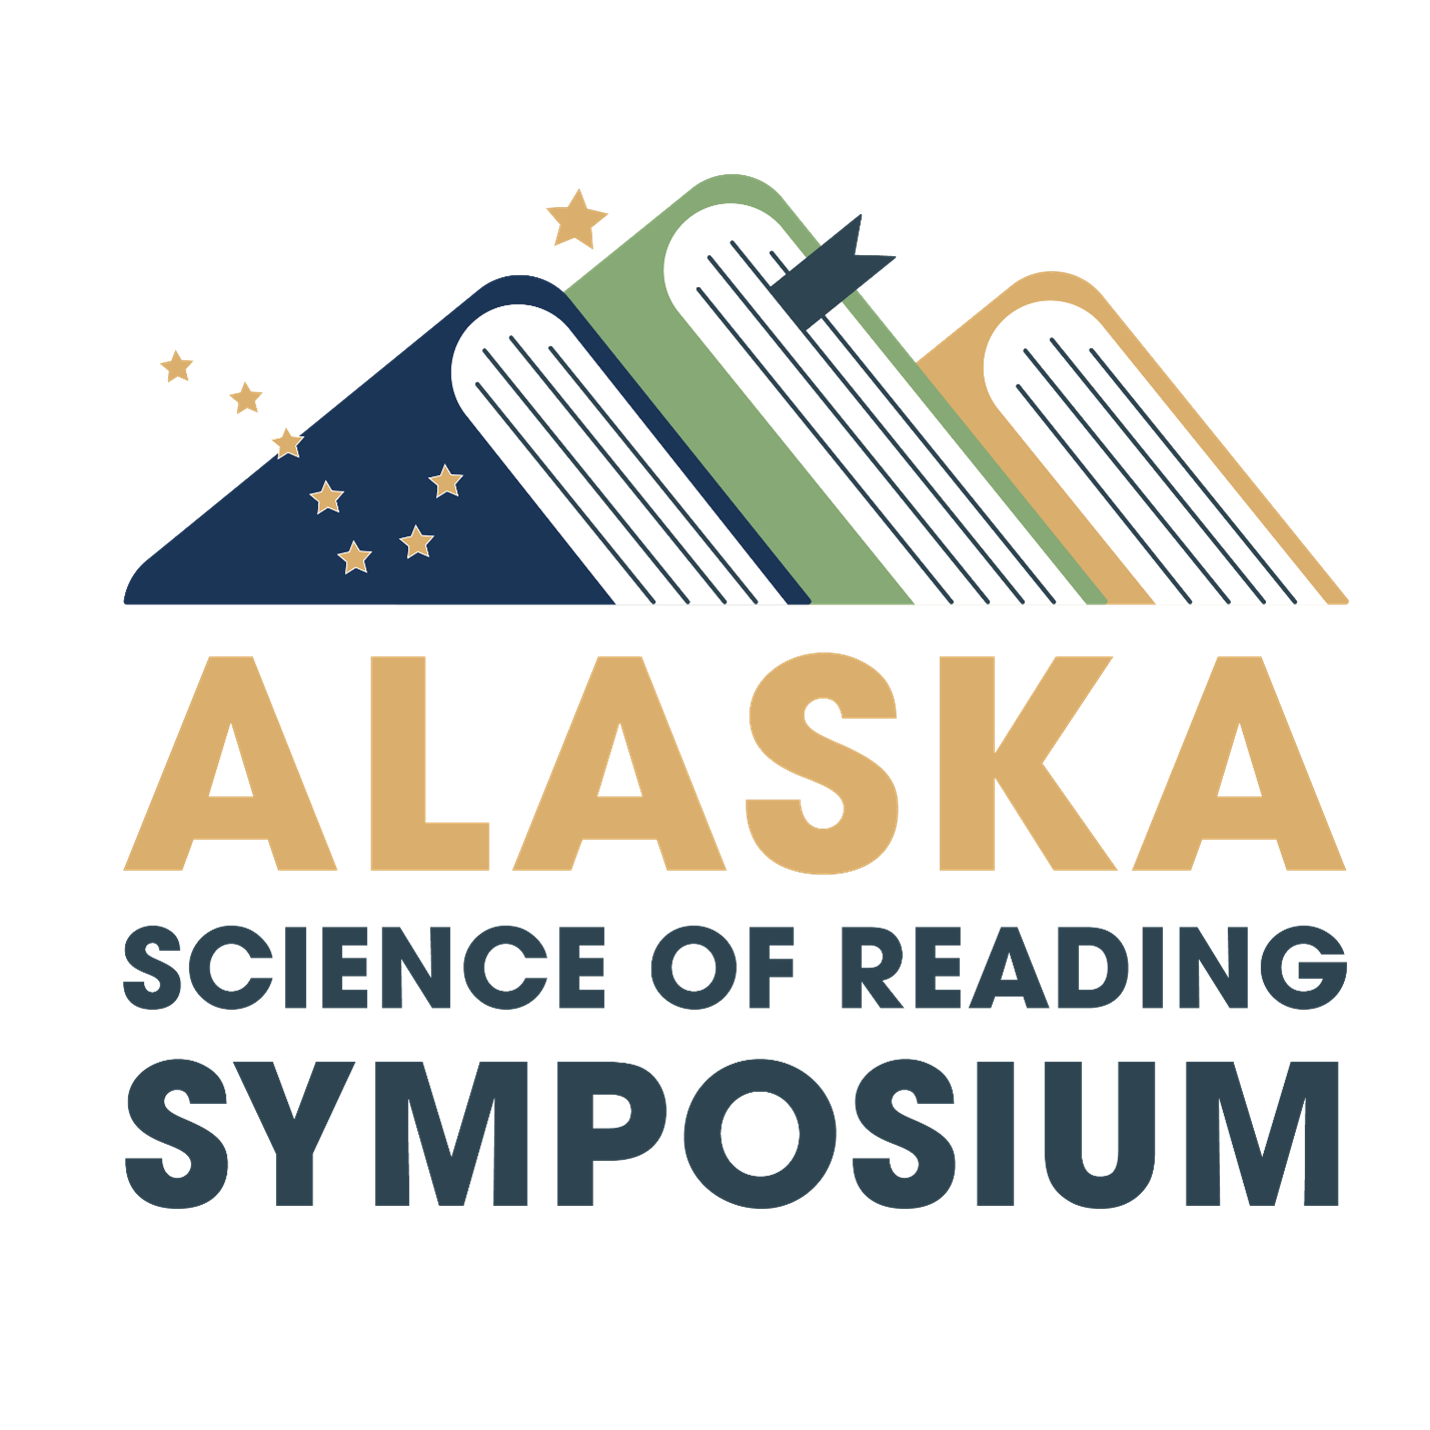 Alaska Science of Reading Symposium Underway This Weekend Education